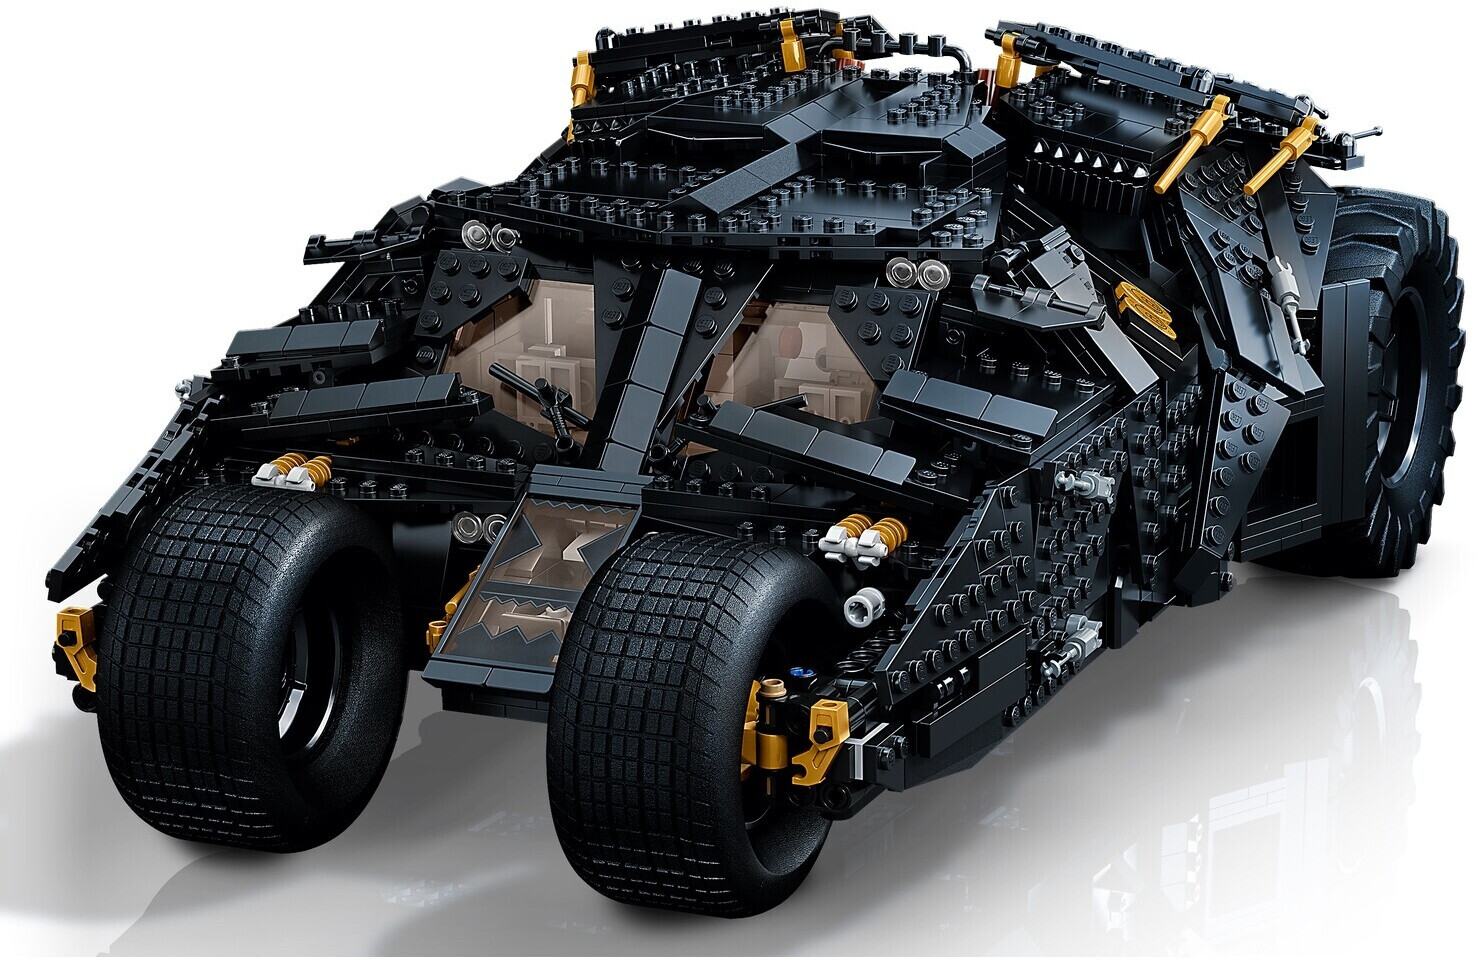 LEGO 76240 DC Batman La Batmobile™ Tumbler, Set Pour Adultes a Exposer Et a  Collectionner, Idée Cadeau, Maquette Voiture - ADMI